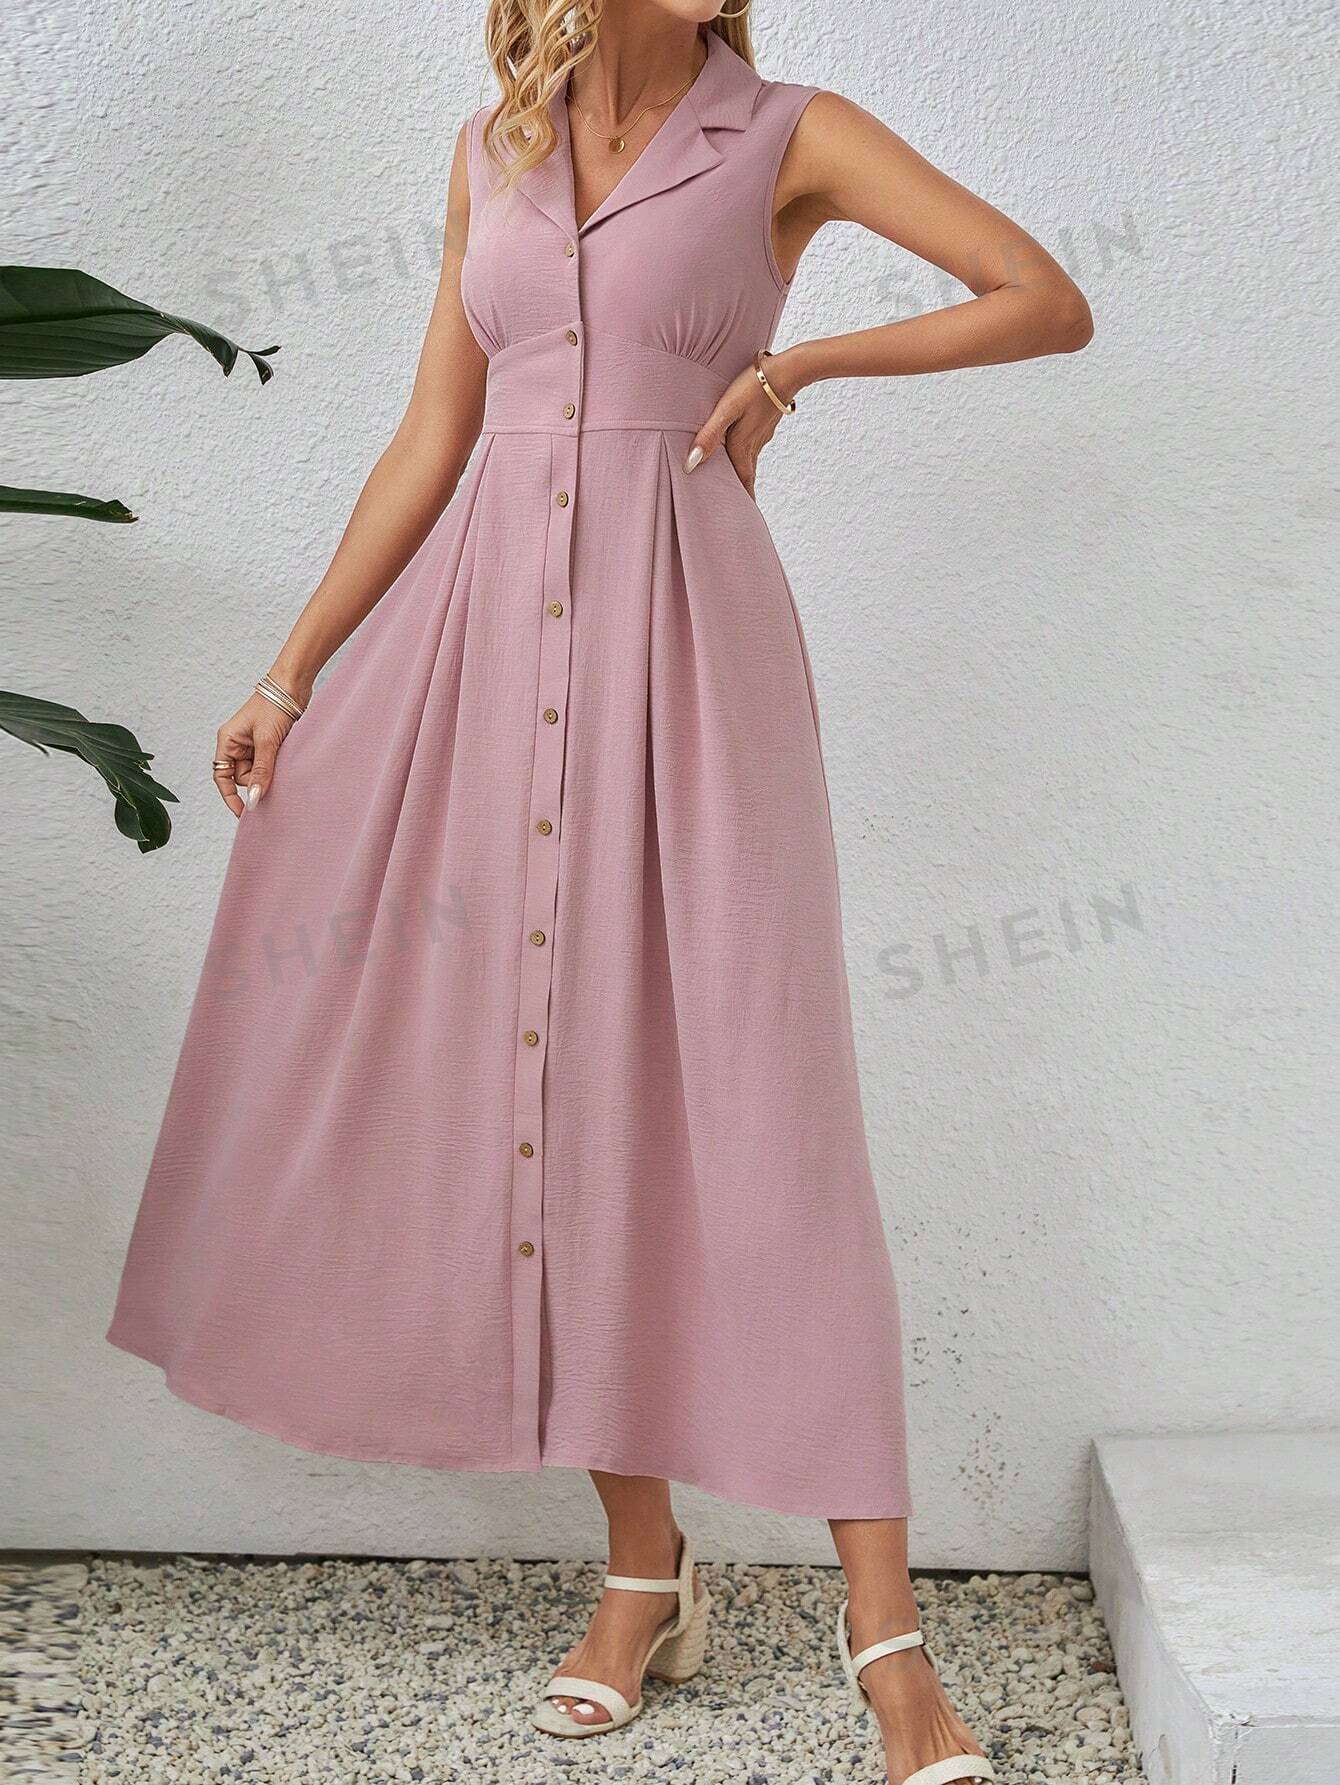 EMERY ROSE Однотонное платье миди без рукавов с зубчатым воротником, пыльный розовый